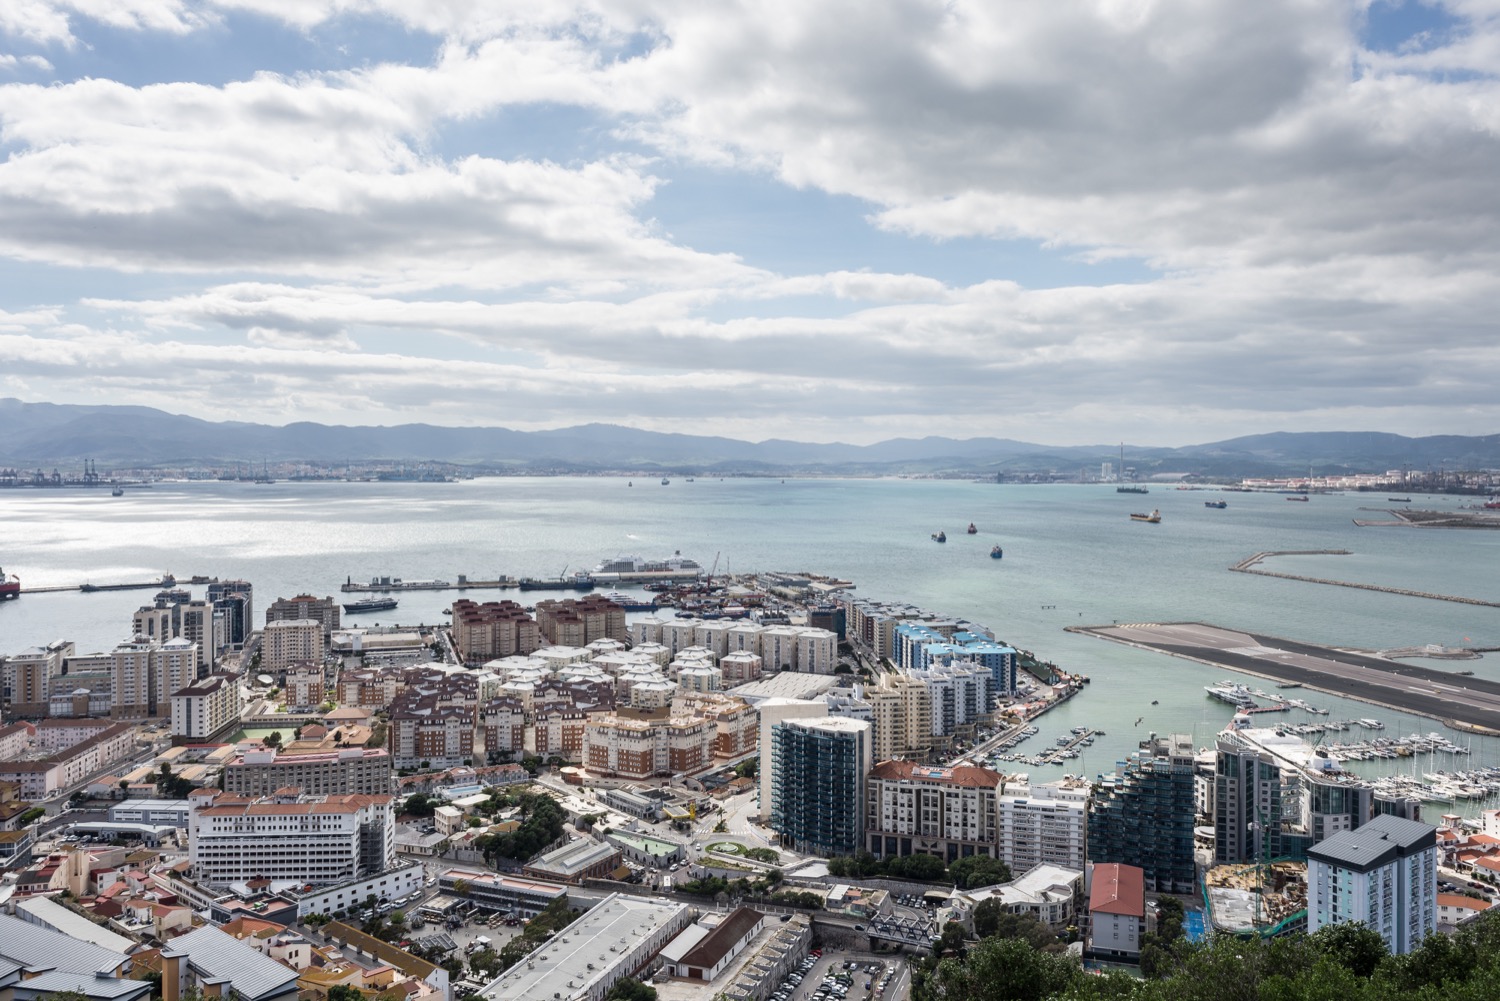 Ciudad de Algeciras desde el mirador